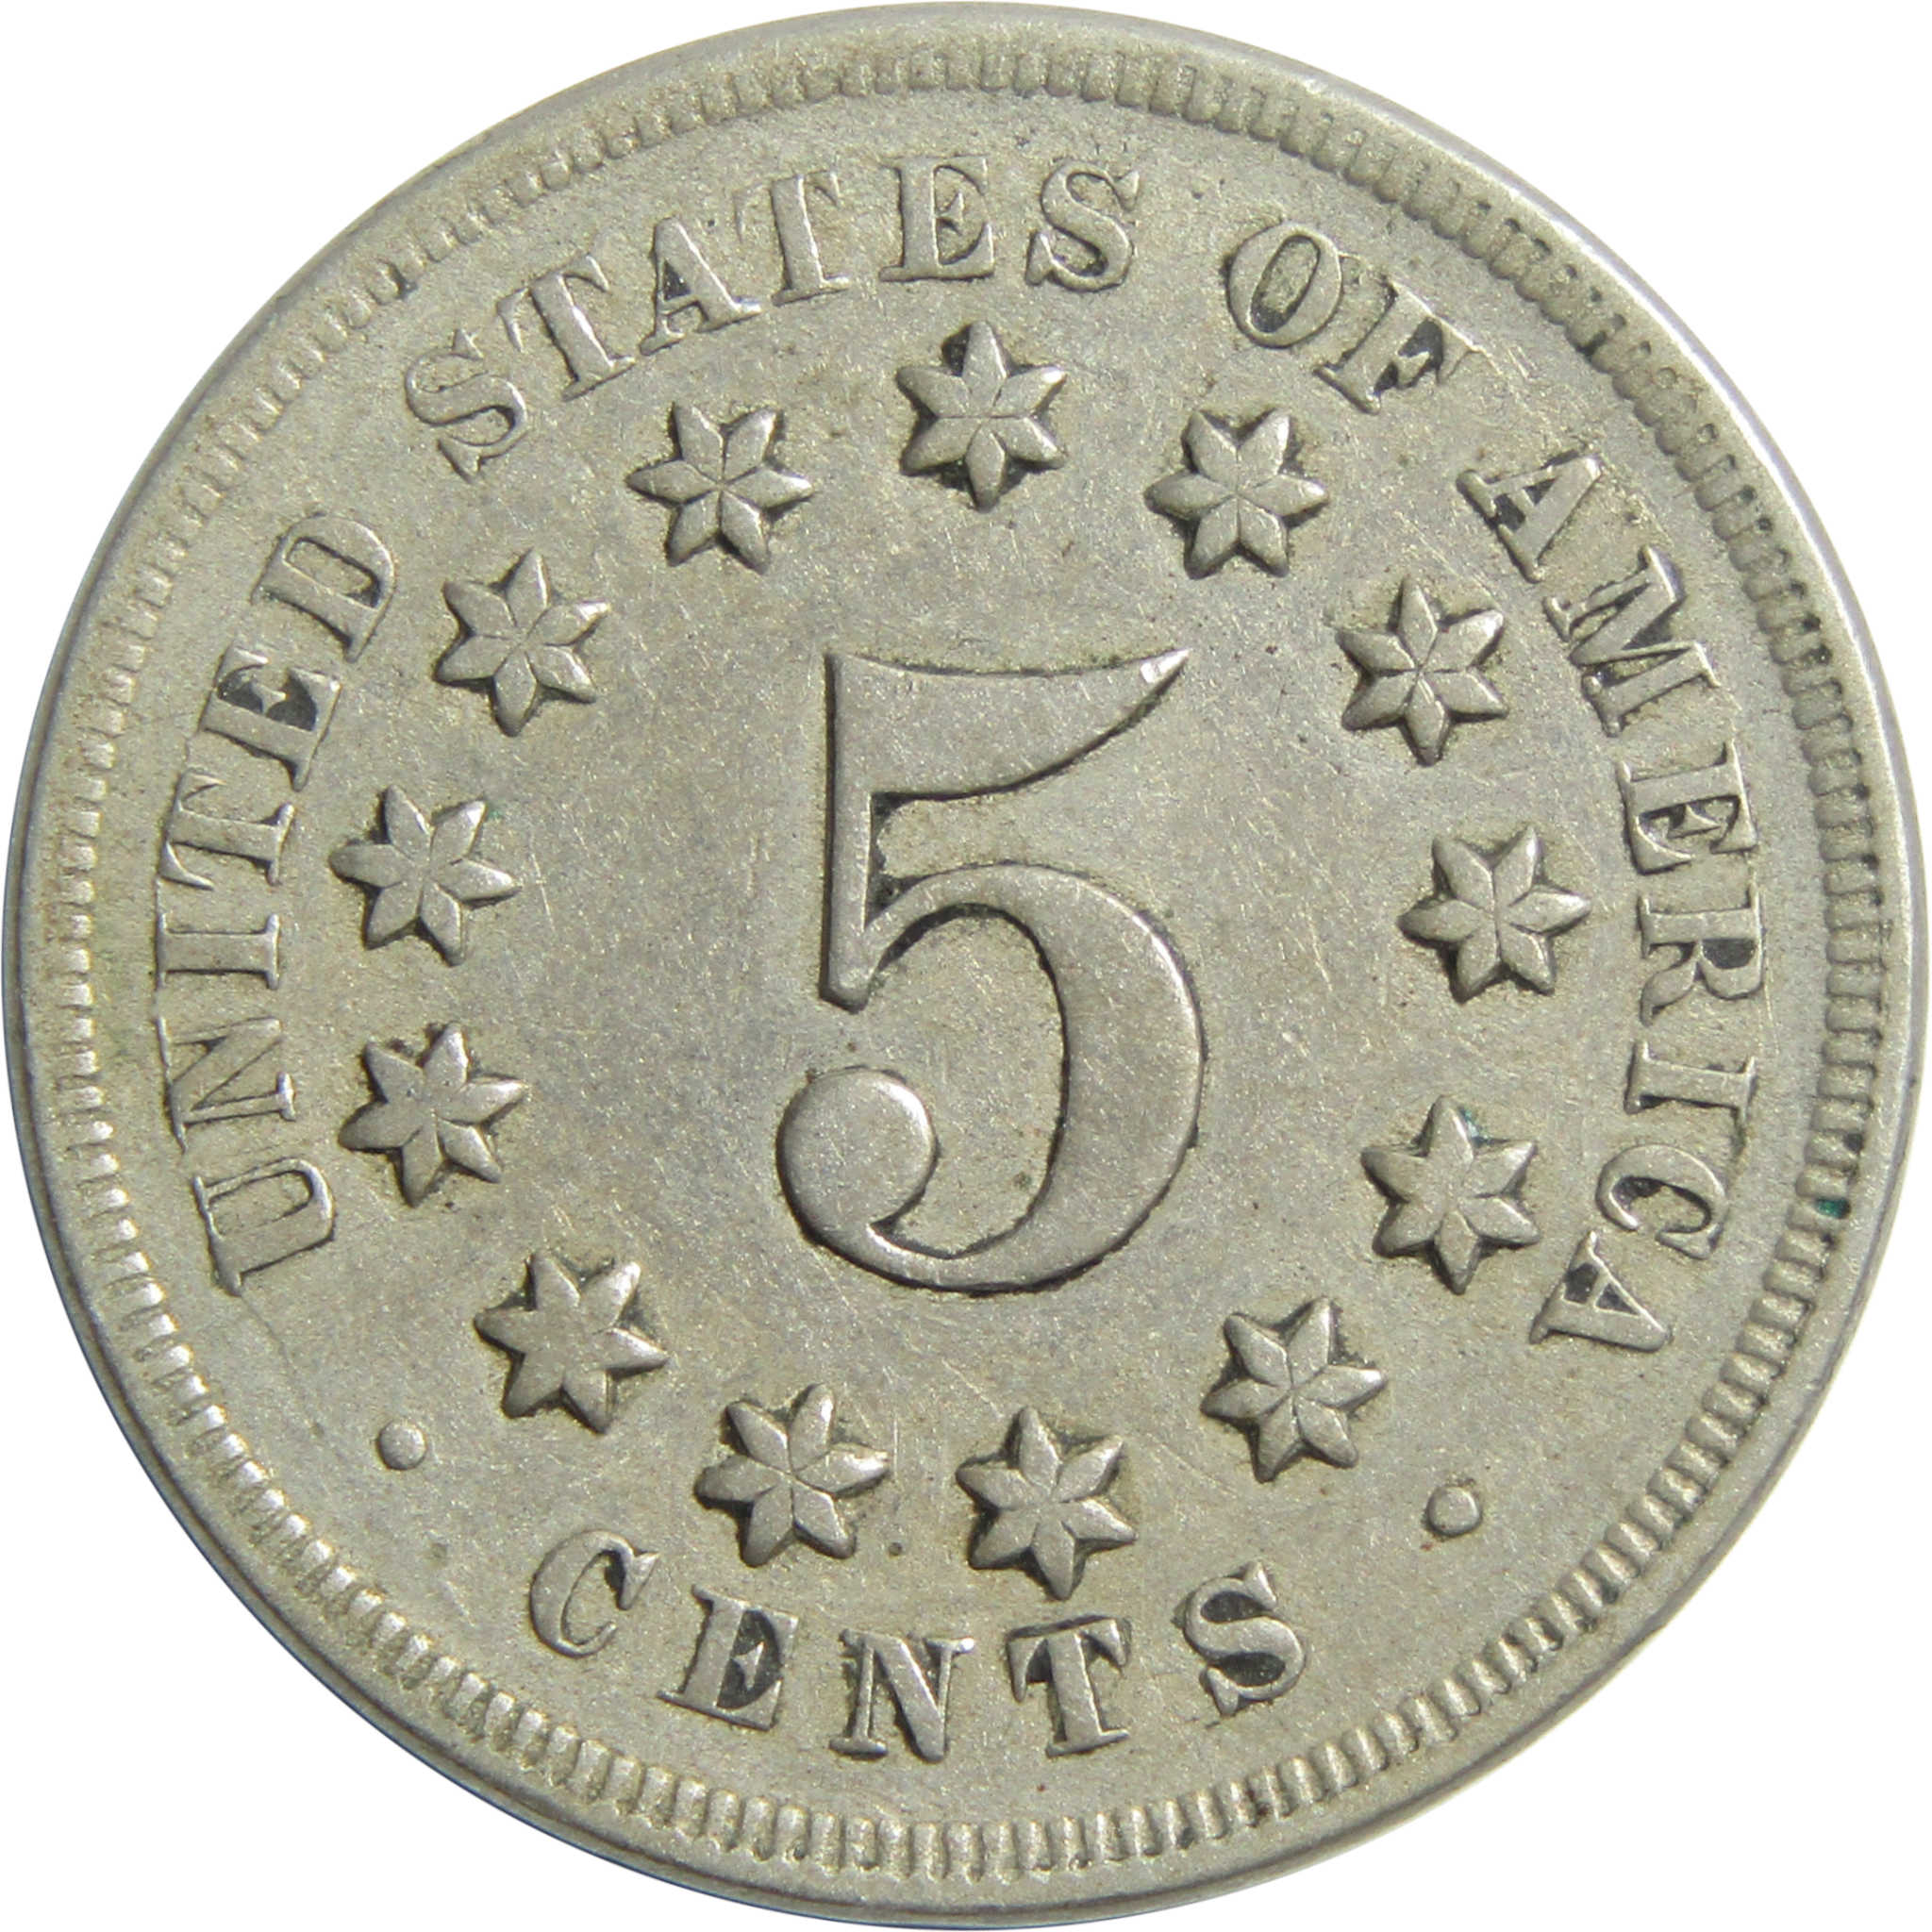 1867 No Rays Shield Nickel VF Very Fine 5c Coin SKU:I13231